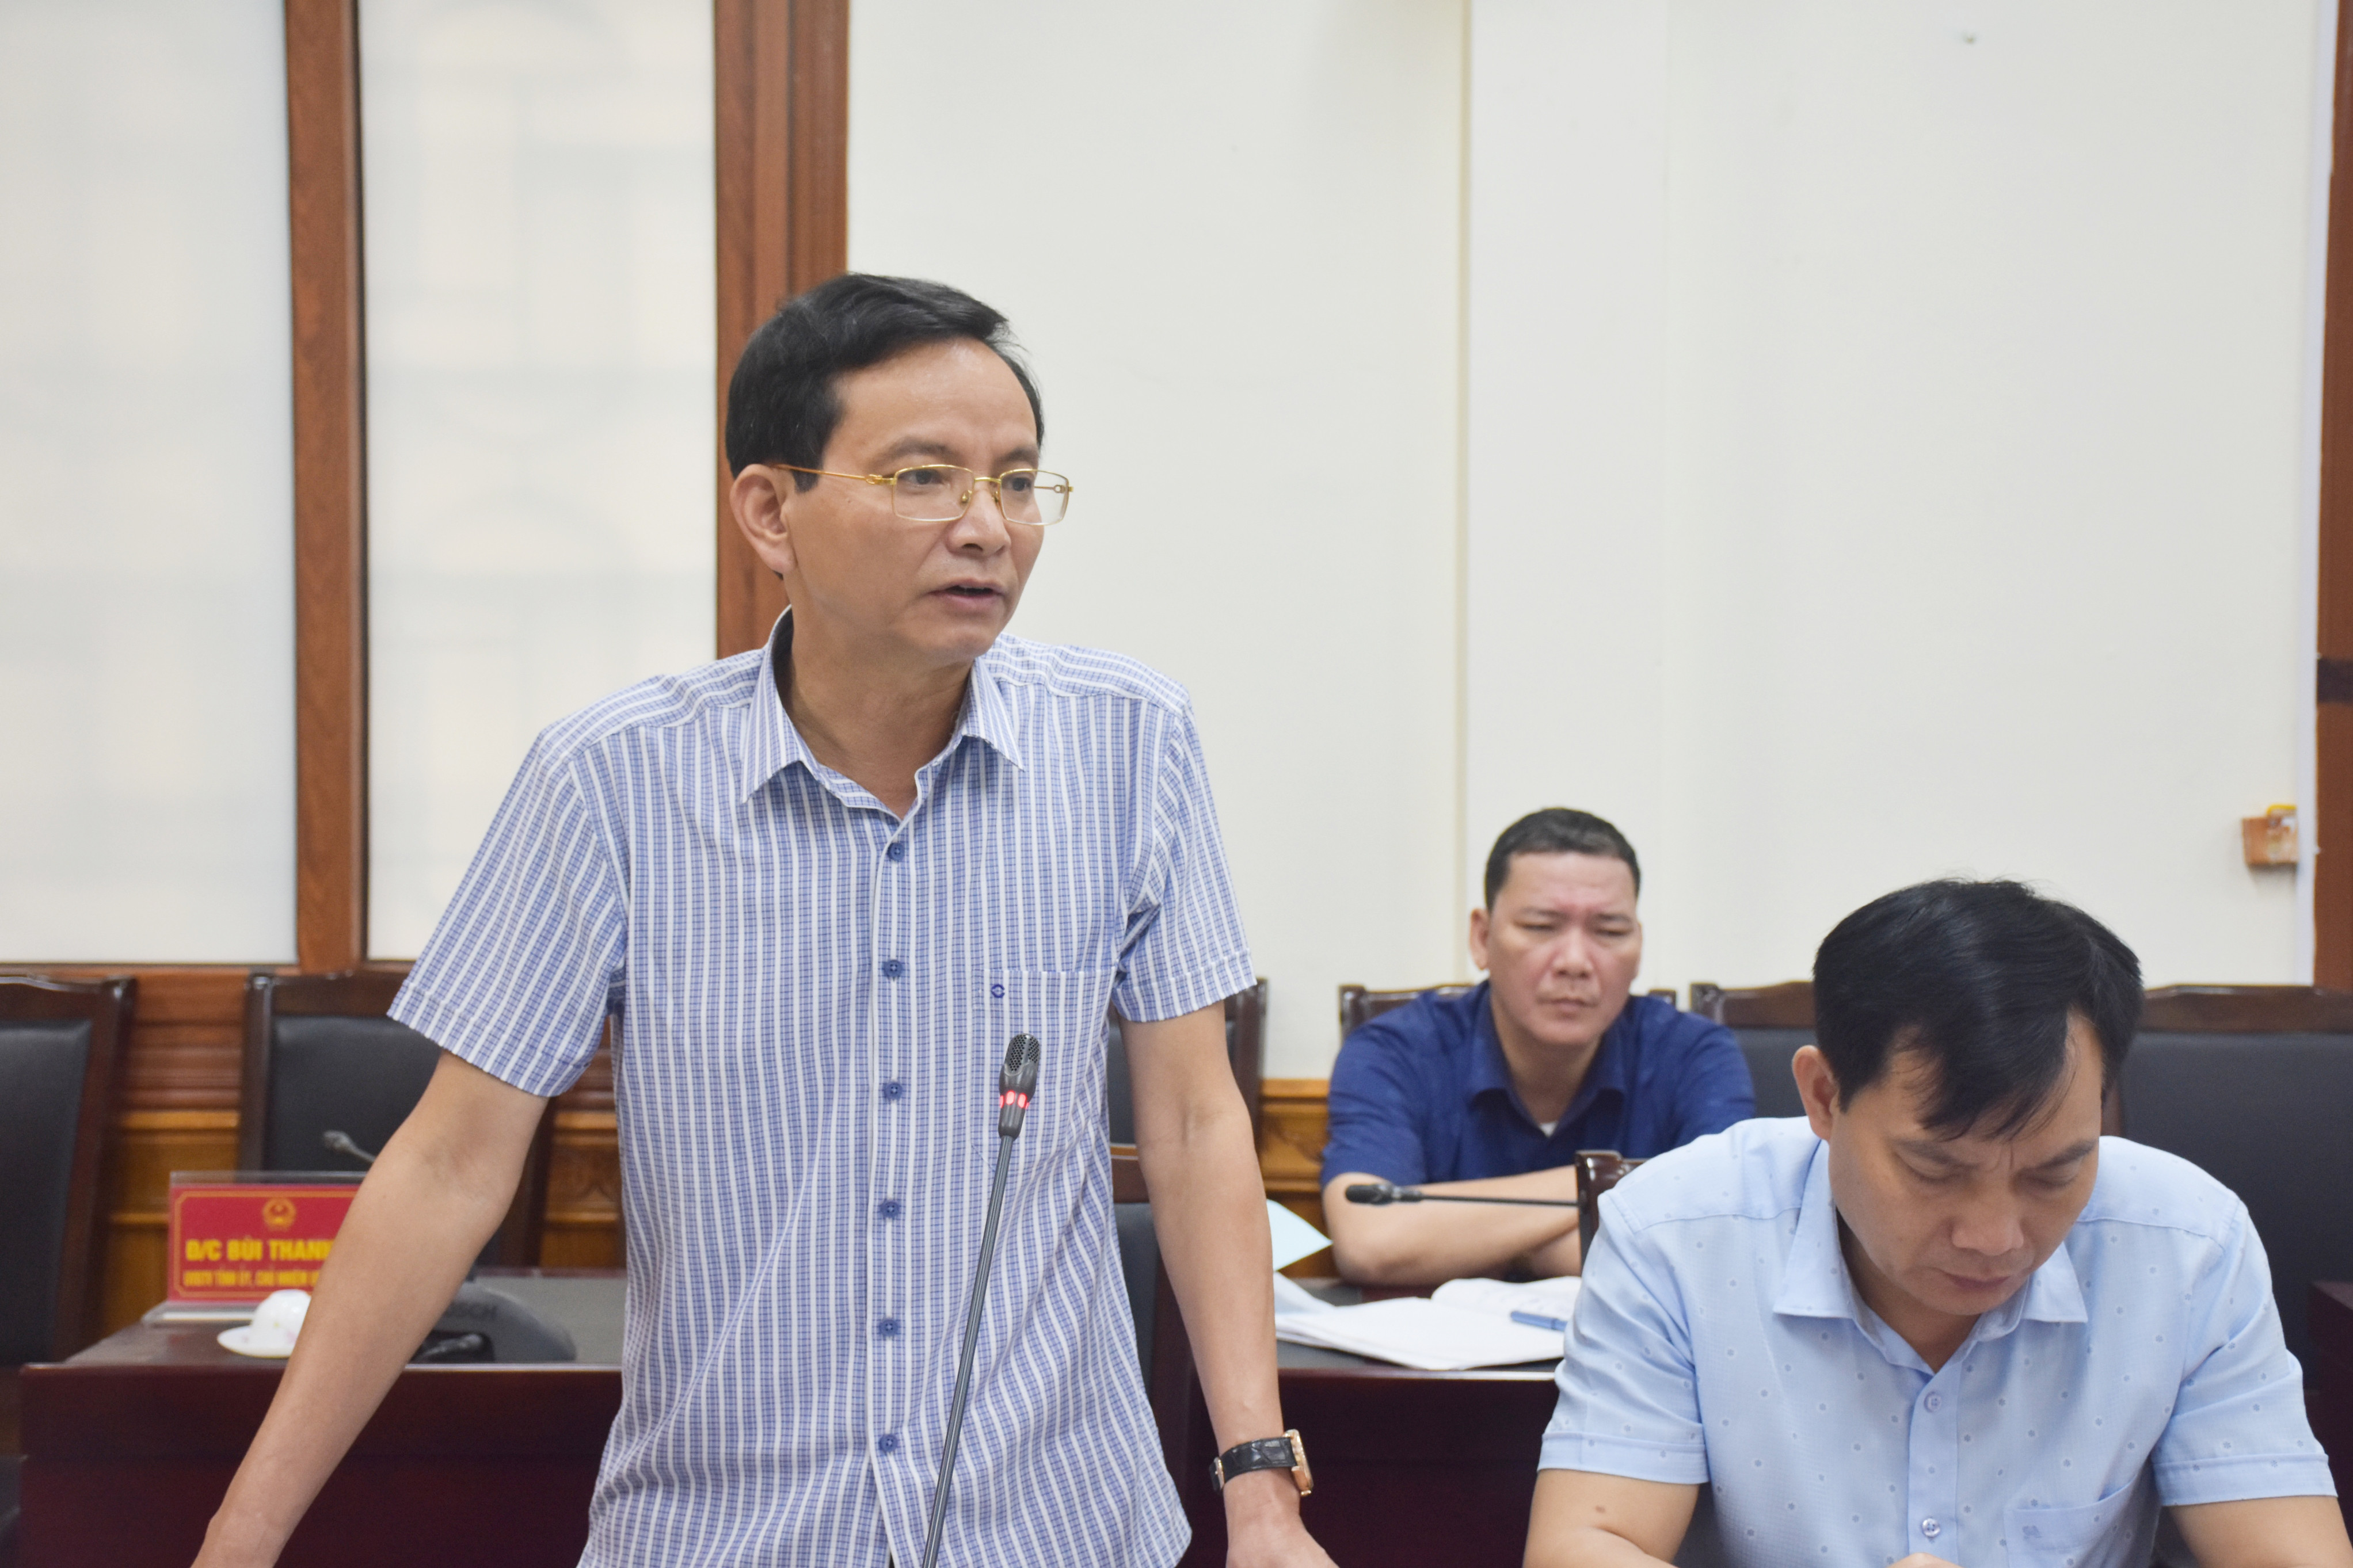 Bí thư Huyện ủy Quỳnh Lưu Hoàng Danh Lai báo cáo công tác bầu cử của huyện Quỳnh Lưu. Ảnh: Thanh Lê